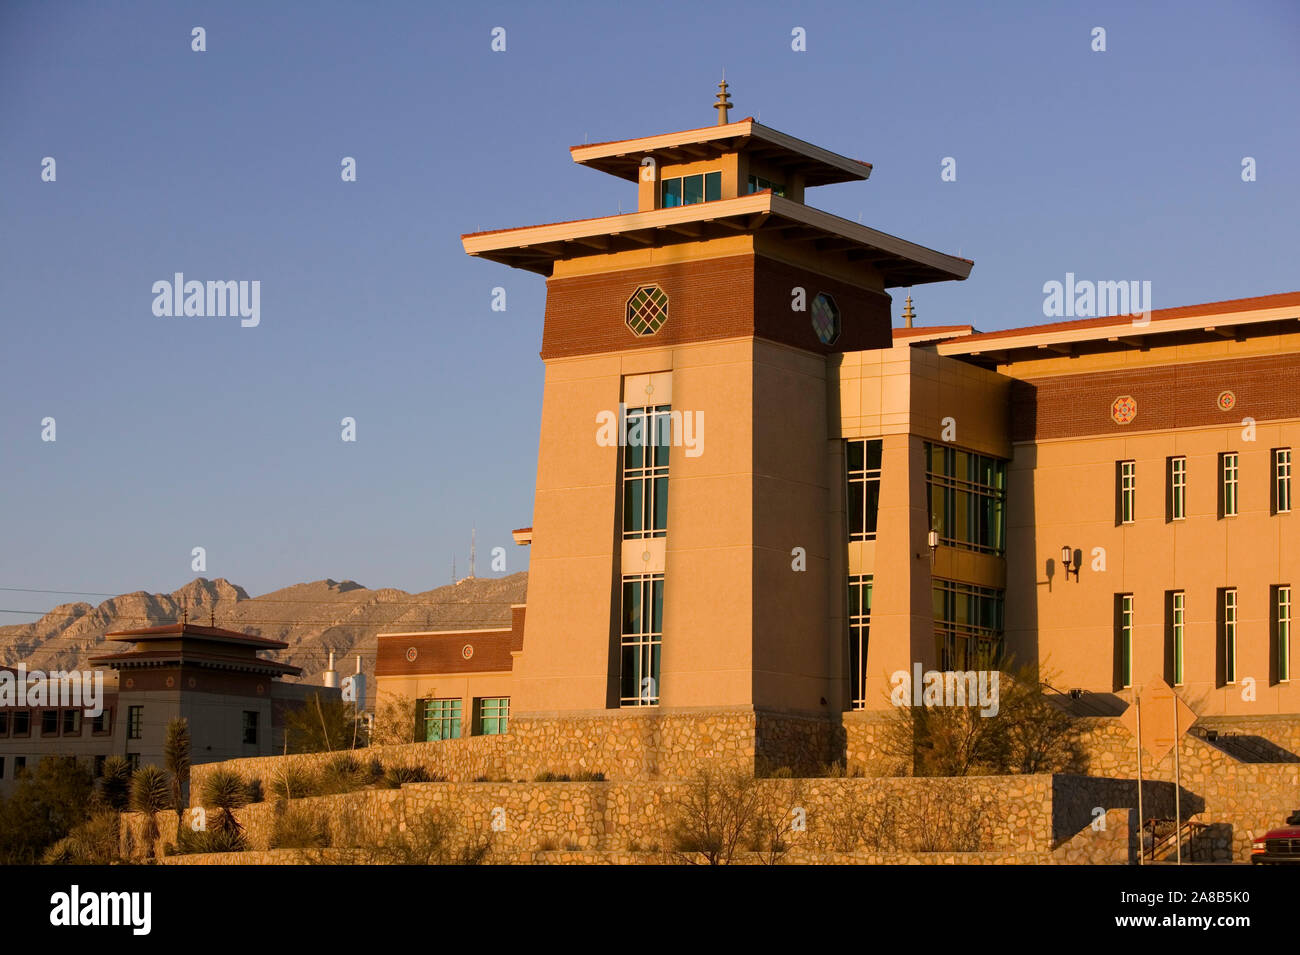 Basso angolo di visione di un edificio educativo, University of Texas, El Paso, Texas, Stati Uniti d'America Foto Stock